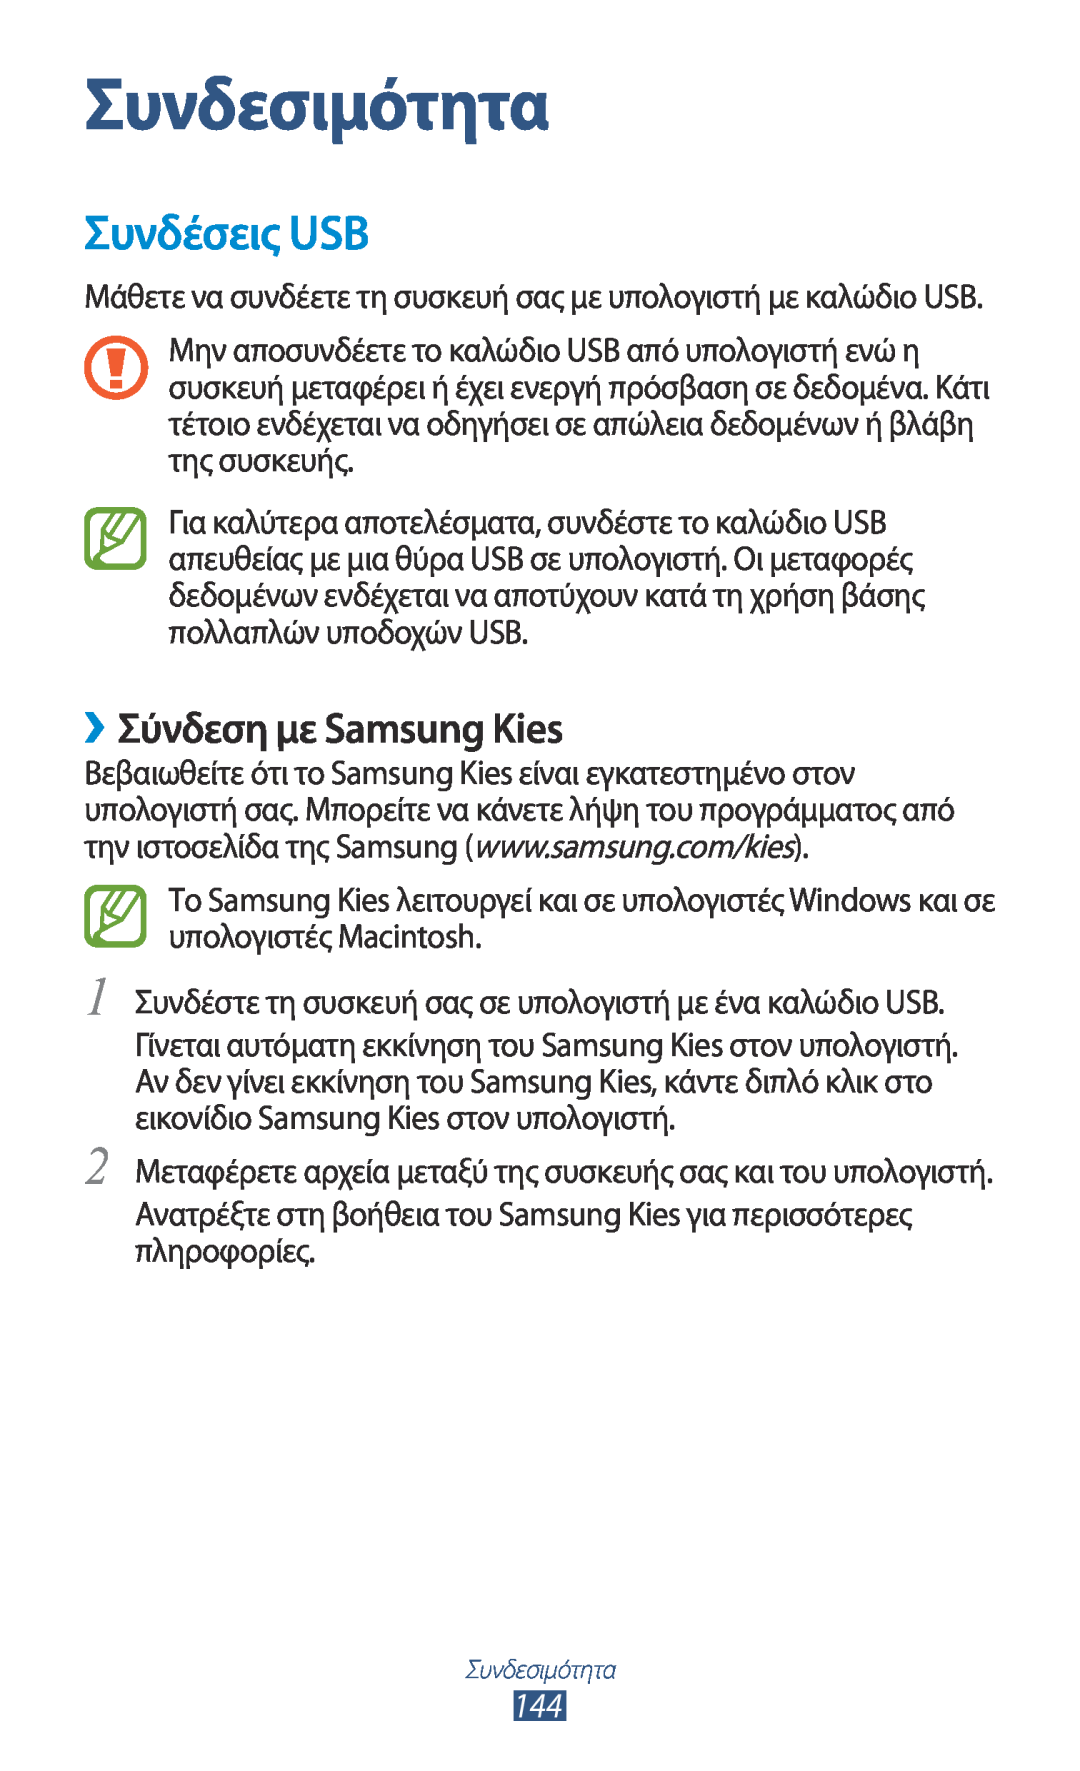 Samsung GT-N7000ZBAEUR, GT-N7000RWAEUR, GT-N7000RWAVGR manual Συνδεσιμότητα, Συνδέσεις USB, ››Σύνδεση με Samsung Kies 